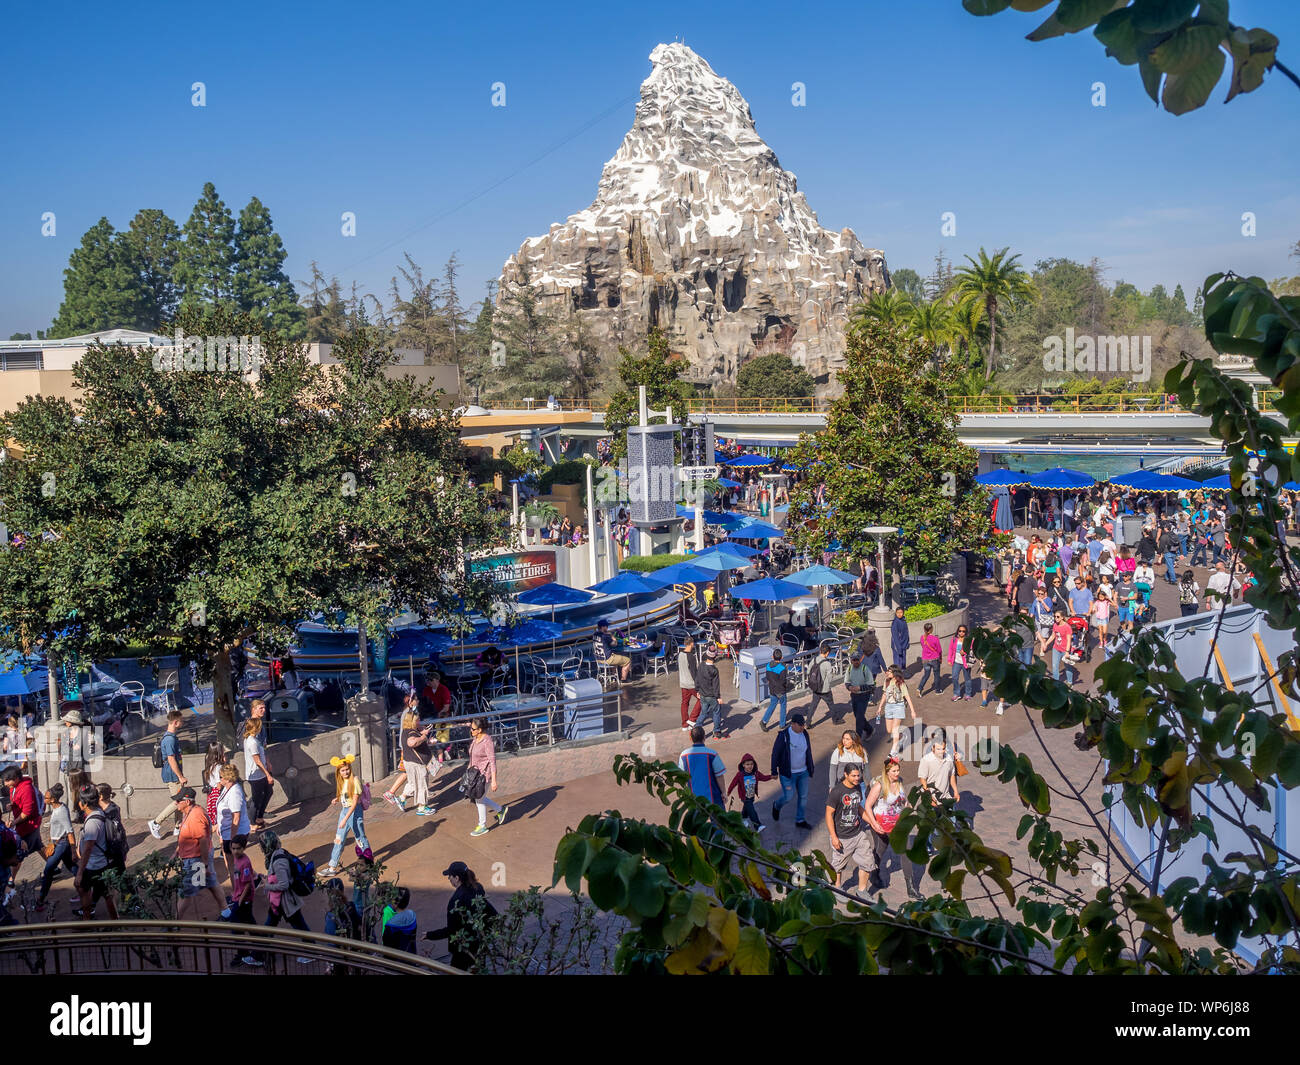 Blick auf Disneyland in Anaheim, Kalifornien. Disneyland ist einer der weltweit berühmtesten Amusements parks und Heimat von Mickey Mouse. Stockfoto